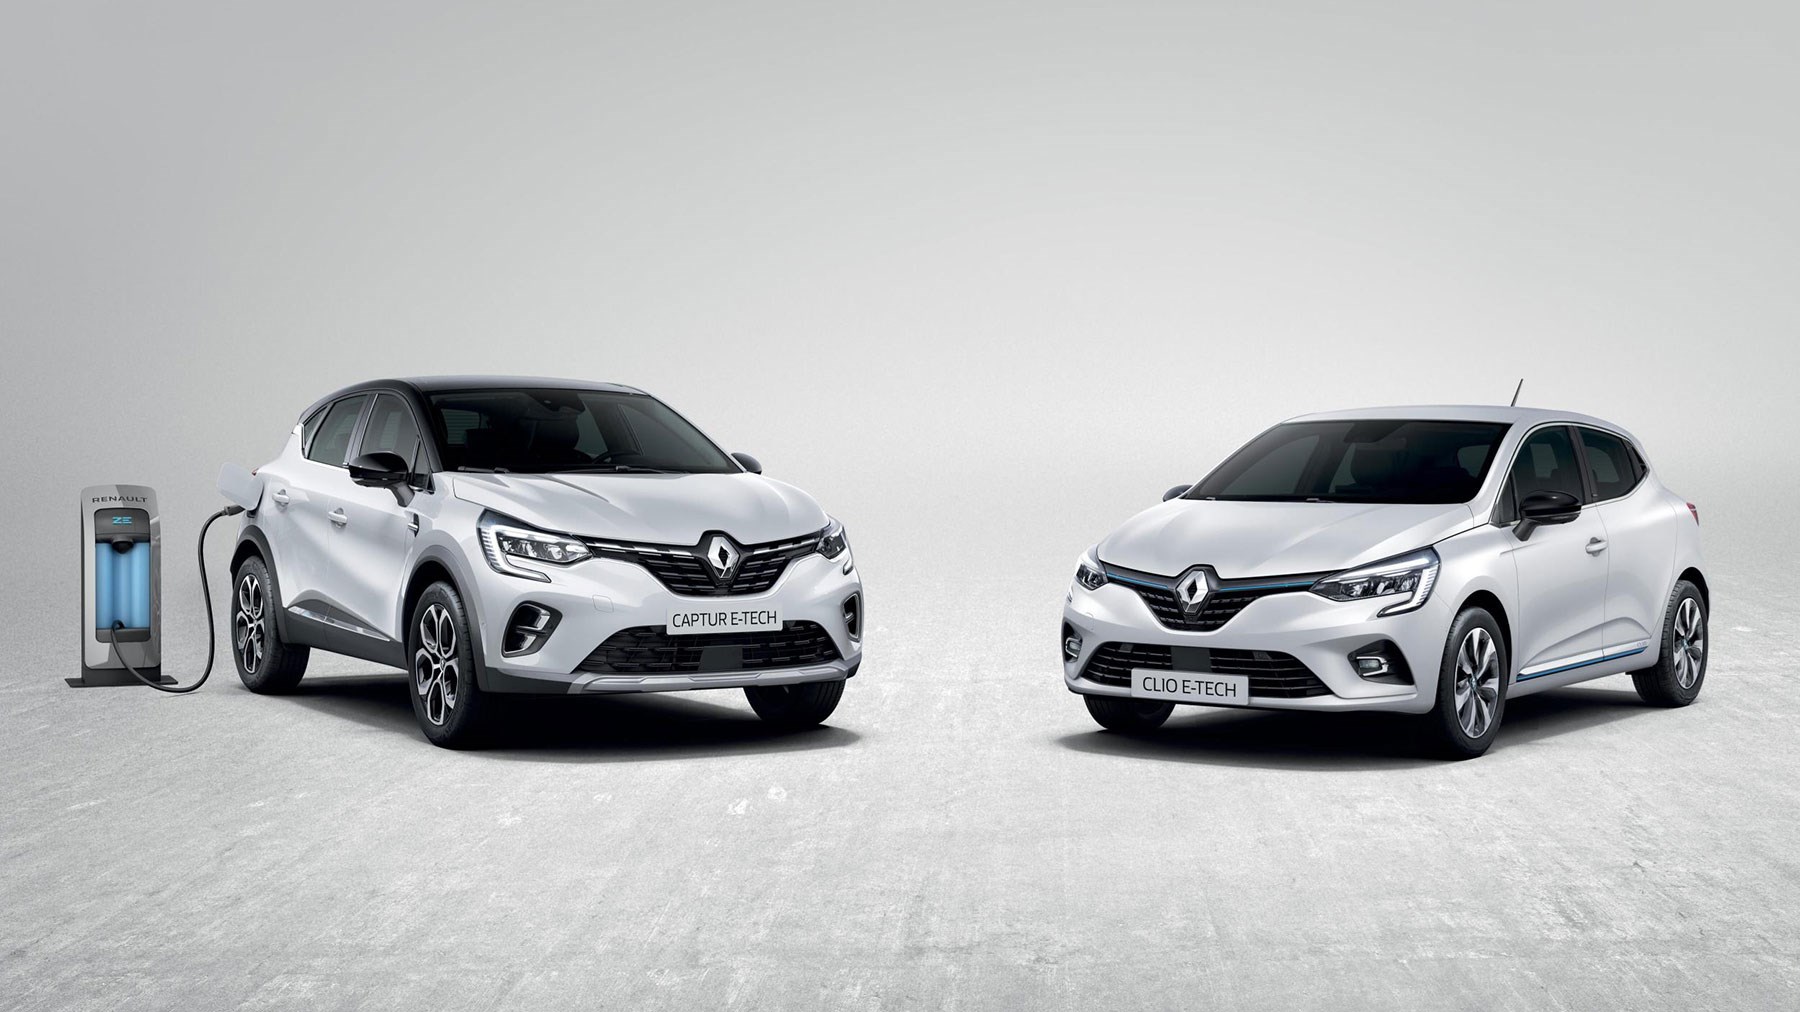 New Renault Clio E-Tech hybrid unveiled